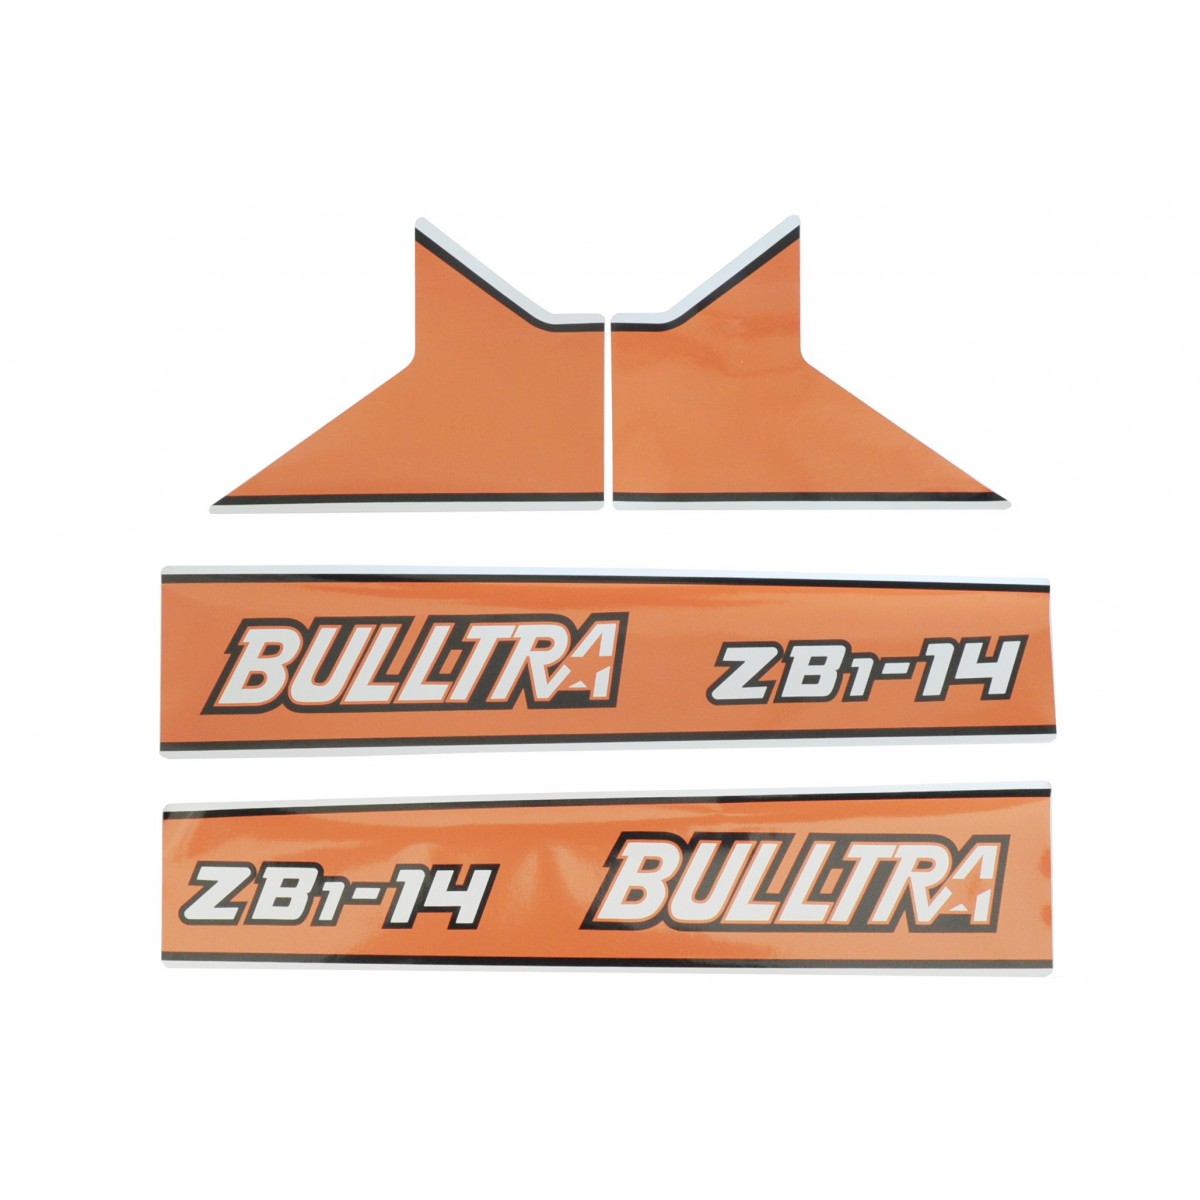 Kubota Bulltra B1-14, ZB1-14 Aufkleber